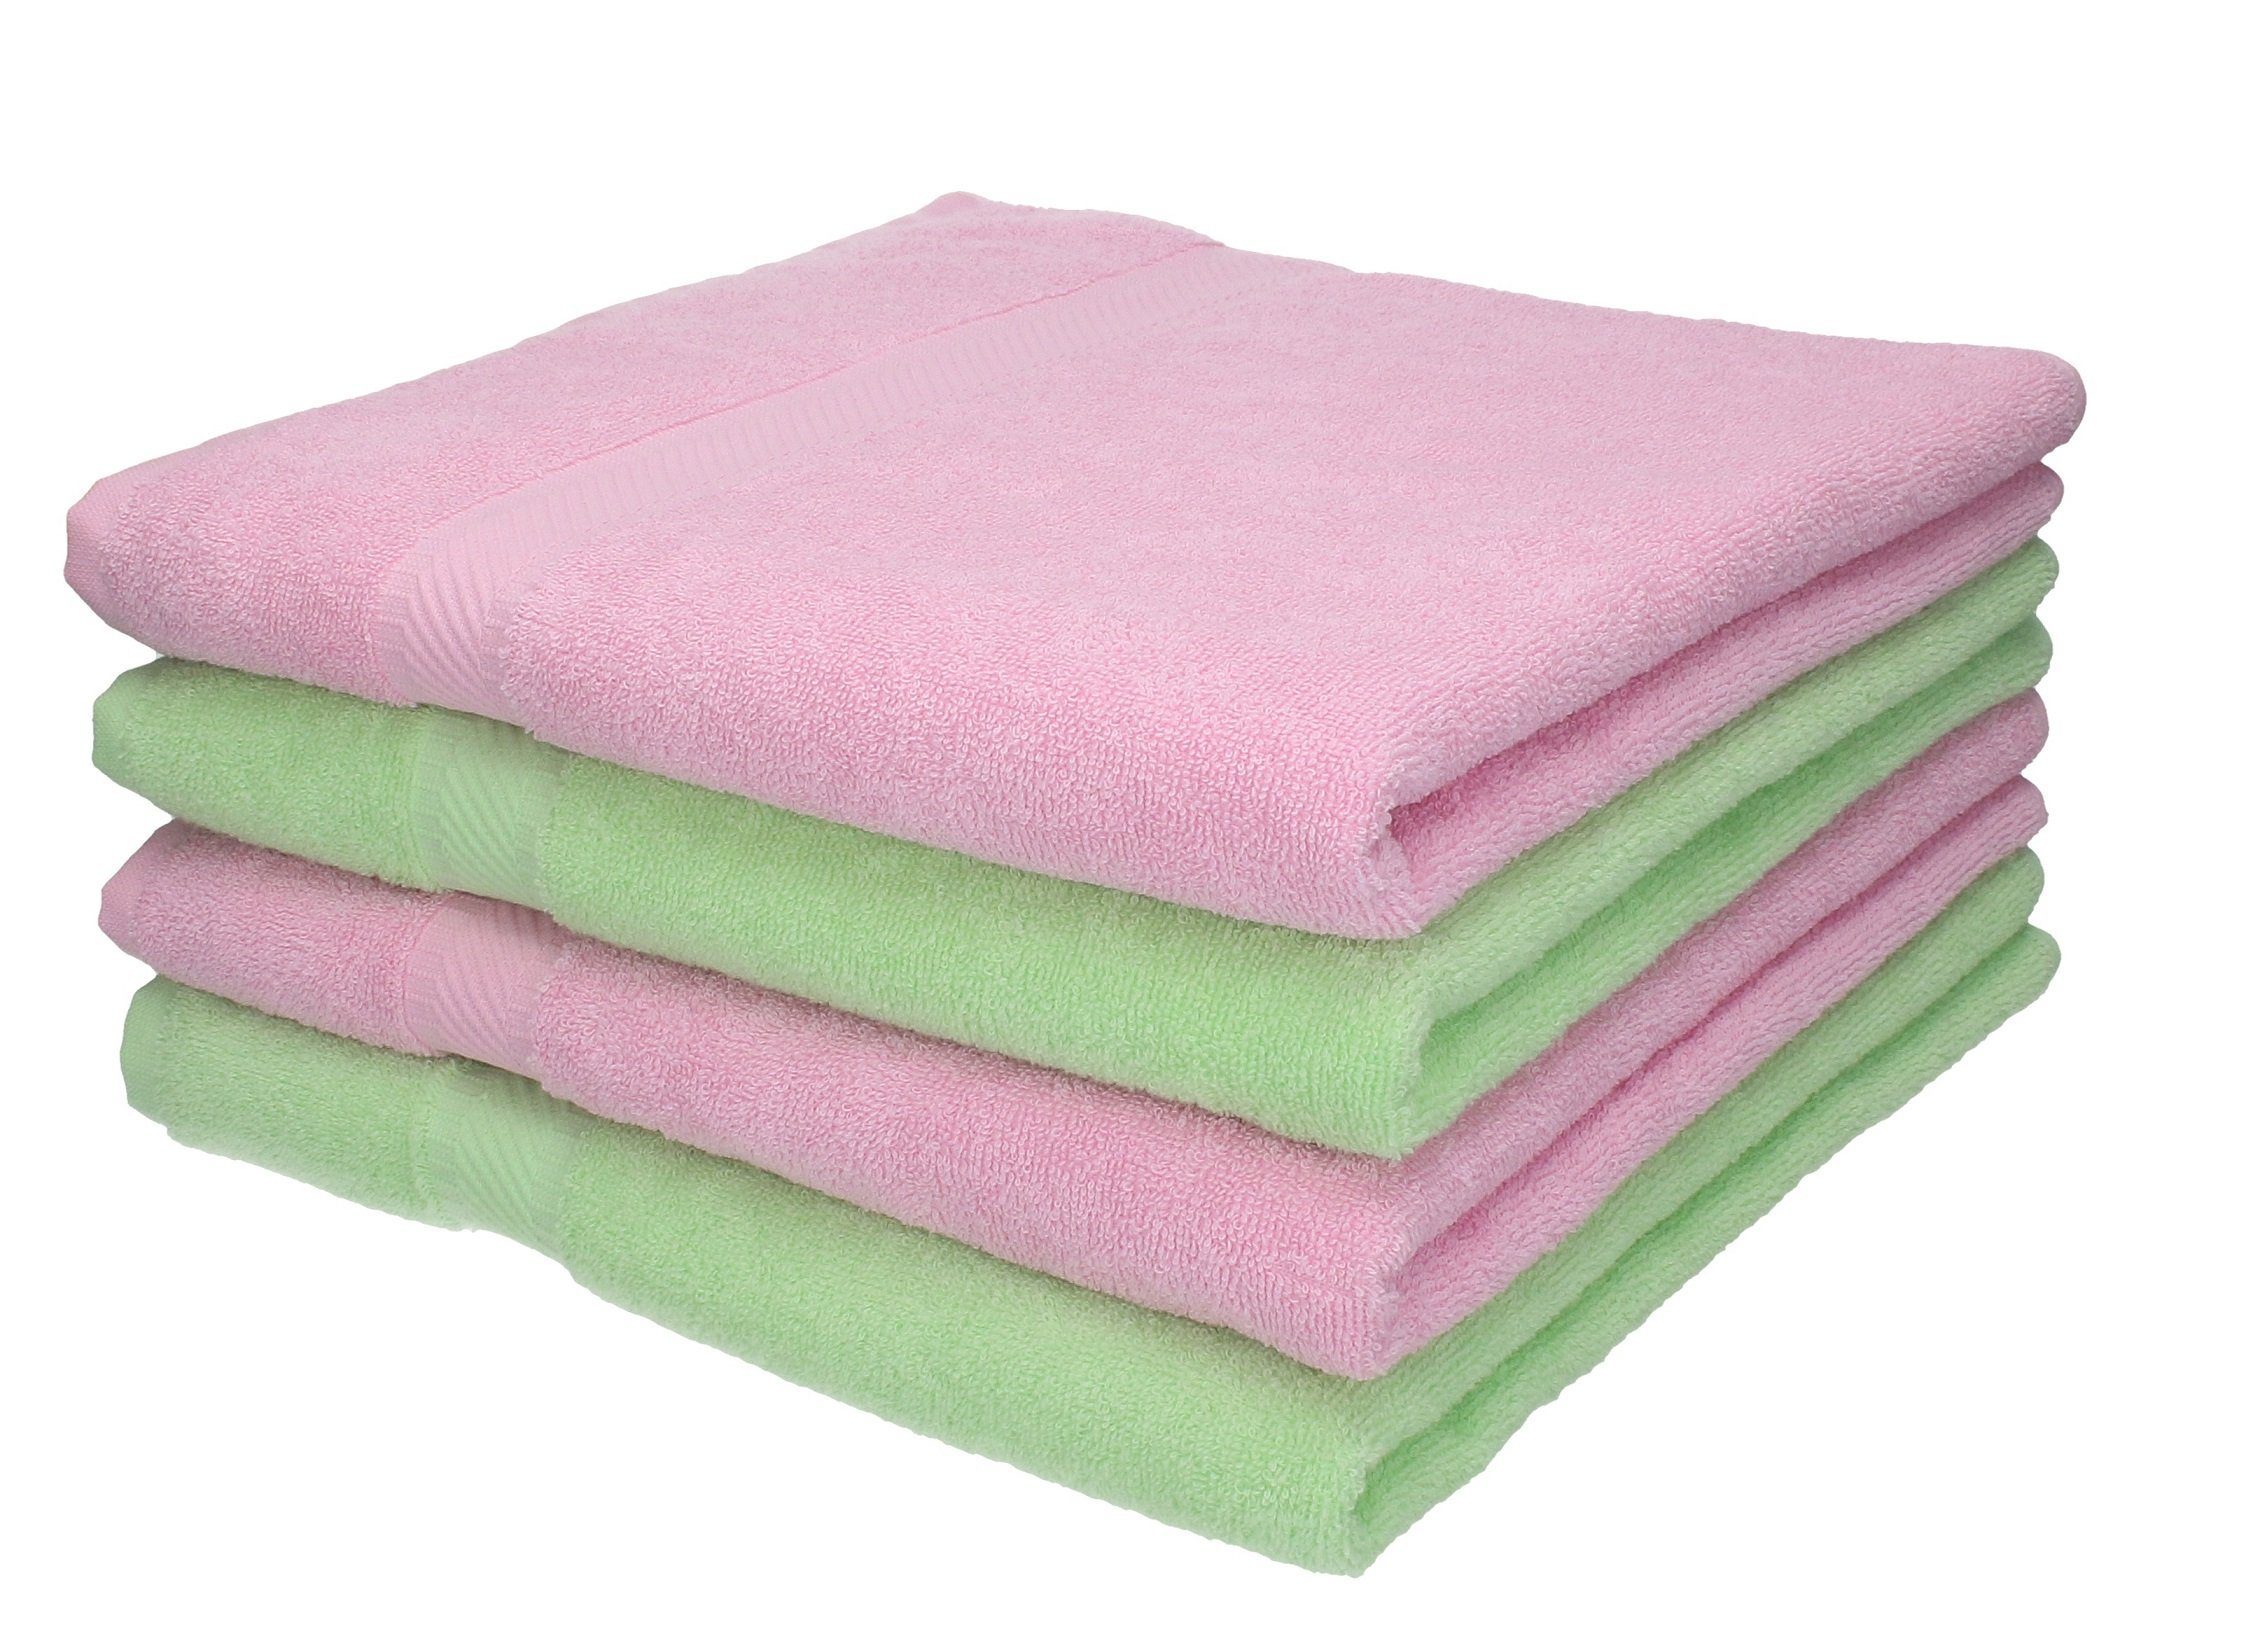 Betz Duschtücher 4 Stück Duschtücher Duschtuch-Set Palermo Farbe grün und rosé, 100% Baumwolle